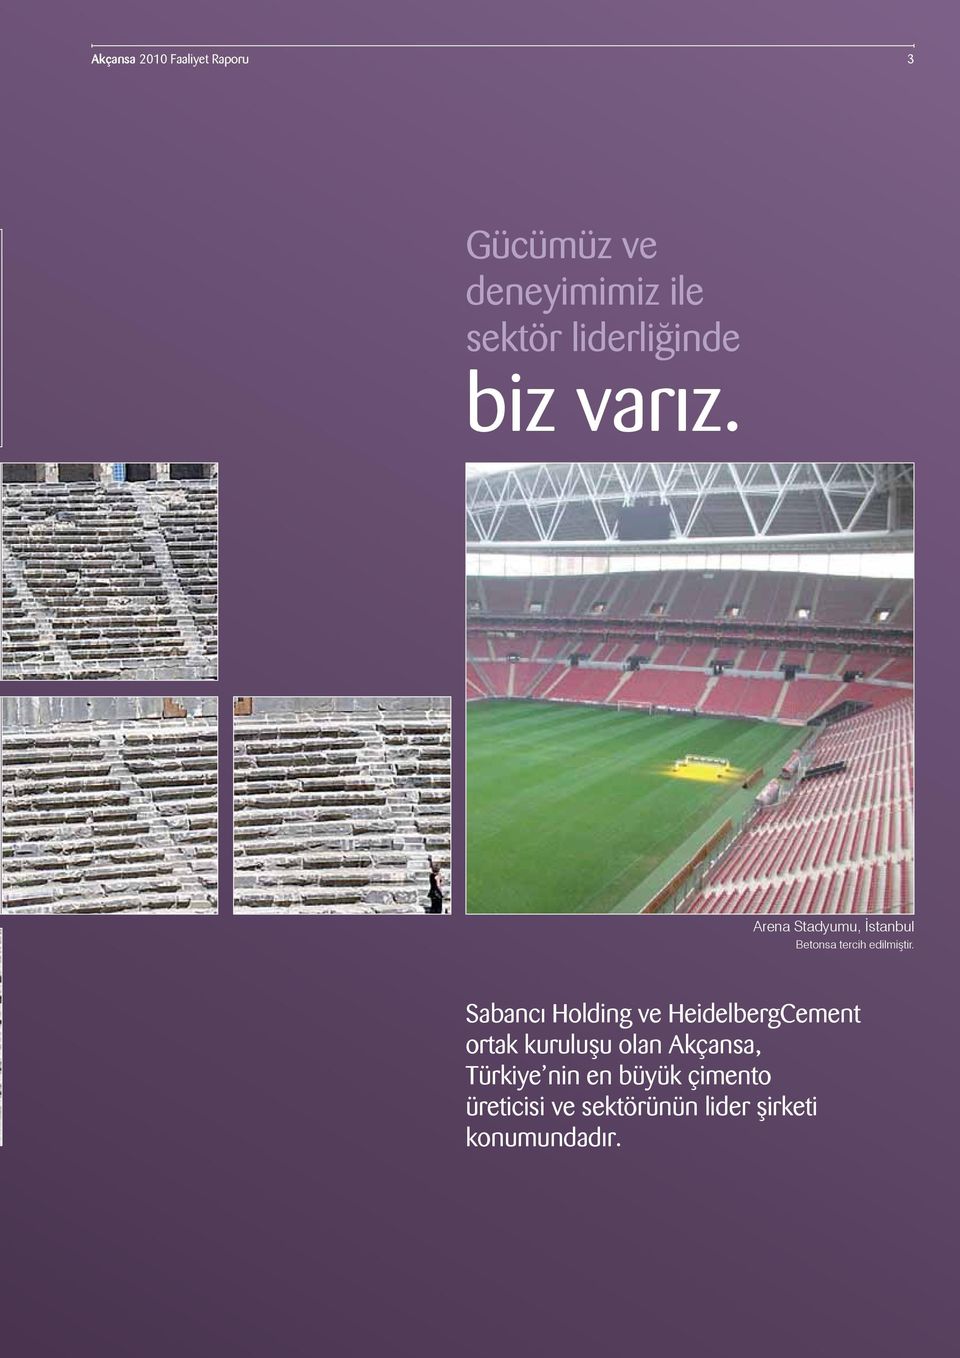 Arena Stadyumu, İstanbul Betonsa tercih edilmiştir.